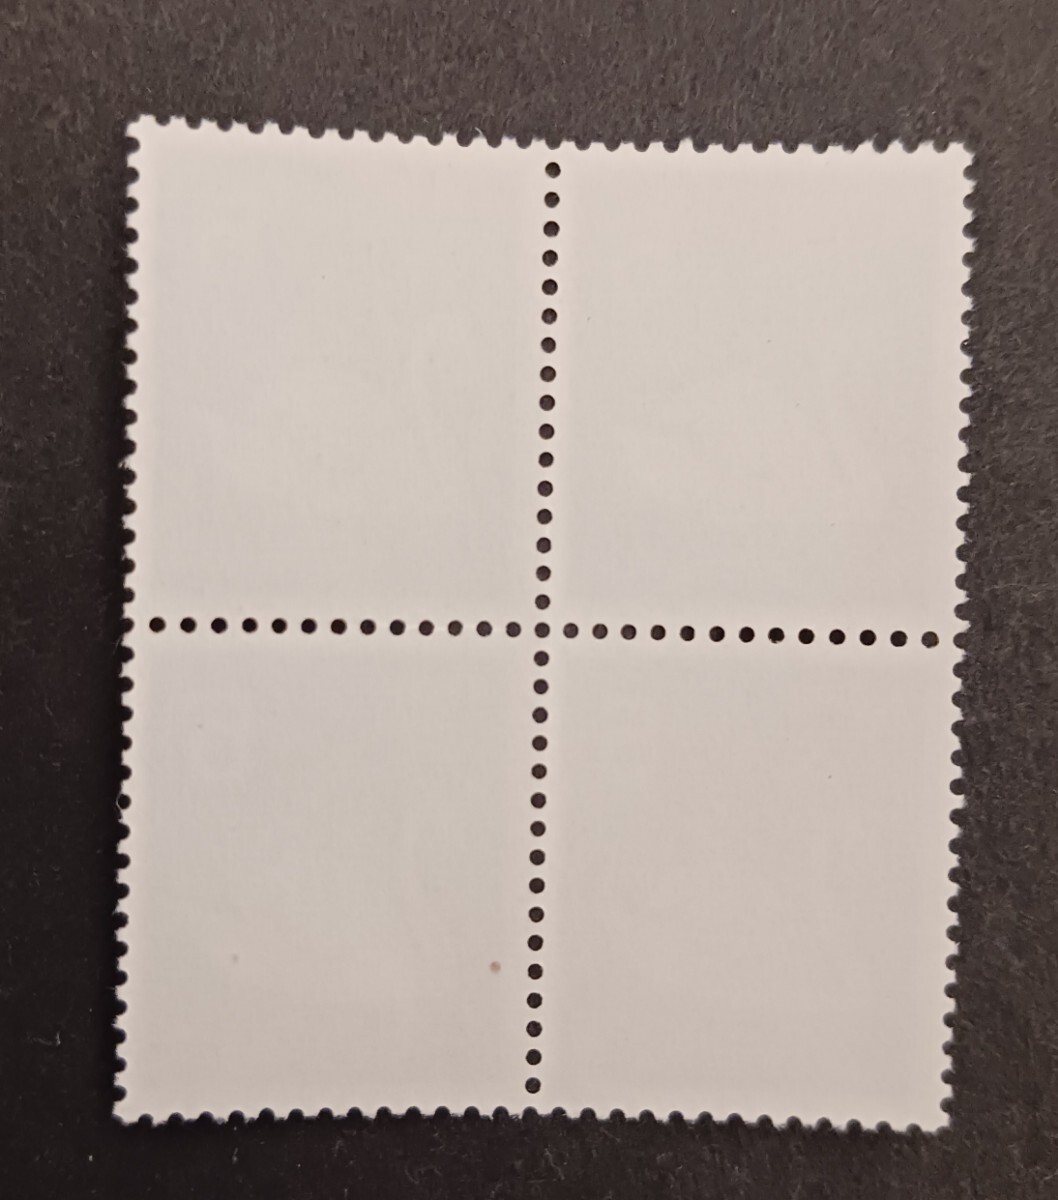 普通切手 1967年シリーズ コブハクチョウ 4枚ブロック 未使用品 (ST-1)_画像2